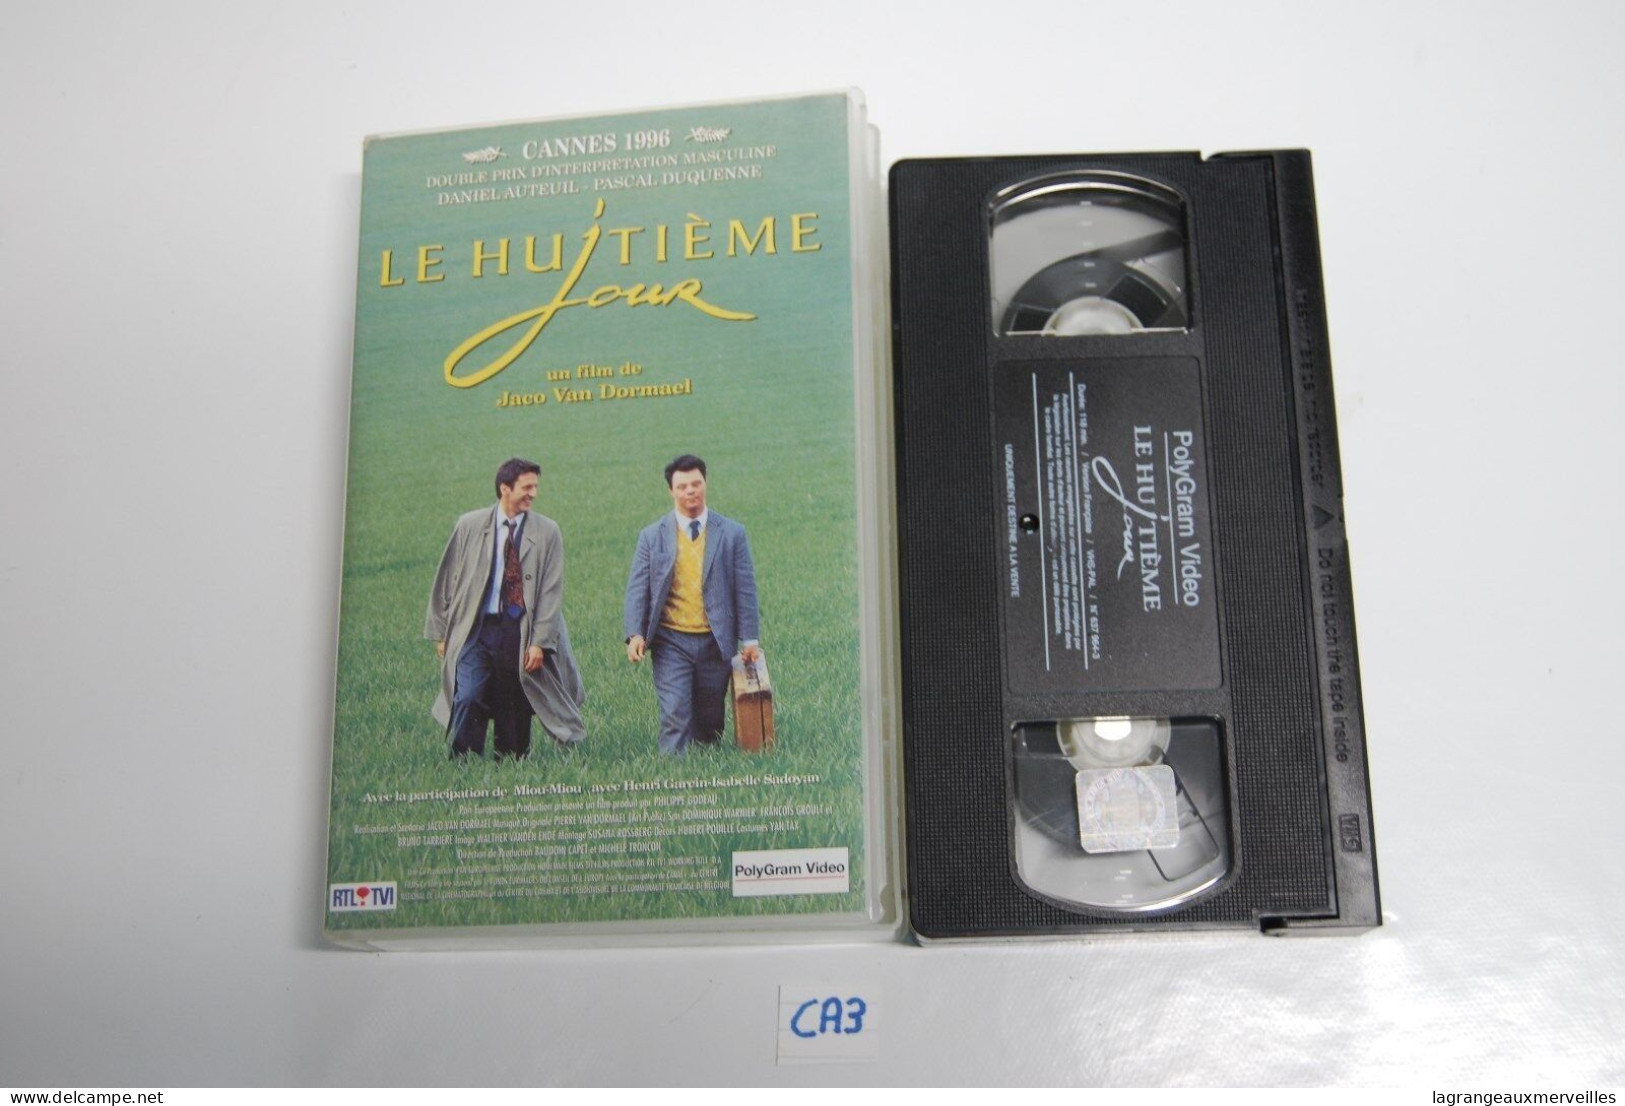 CA3 CASSETTE VIDEO VHS LE HUITI7ME JOUR - Drama